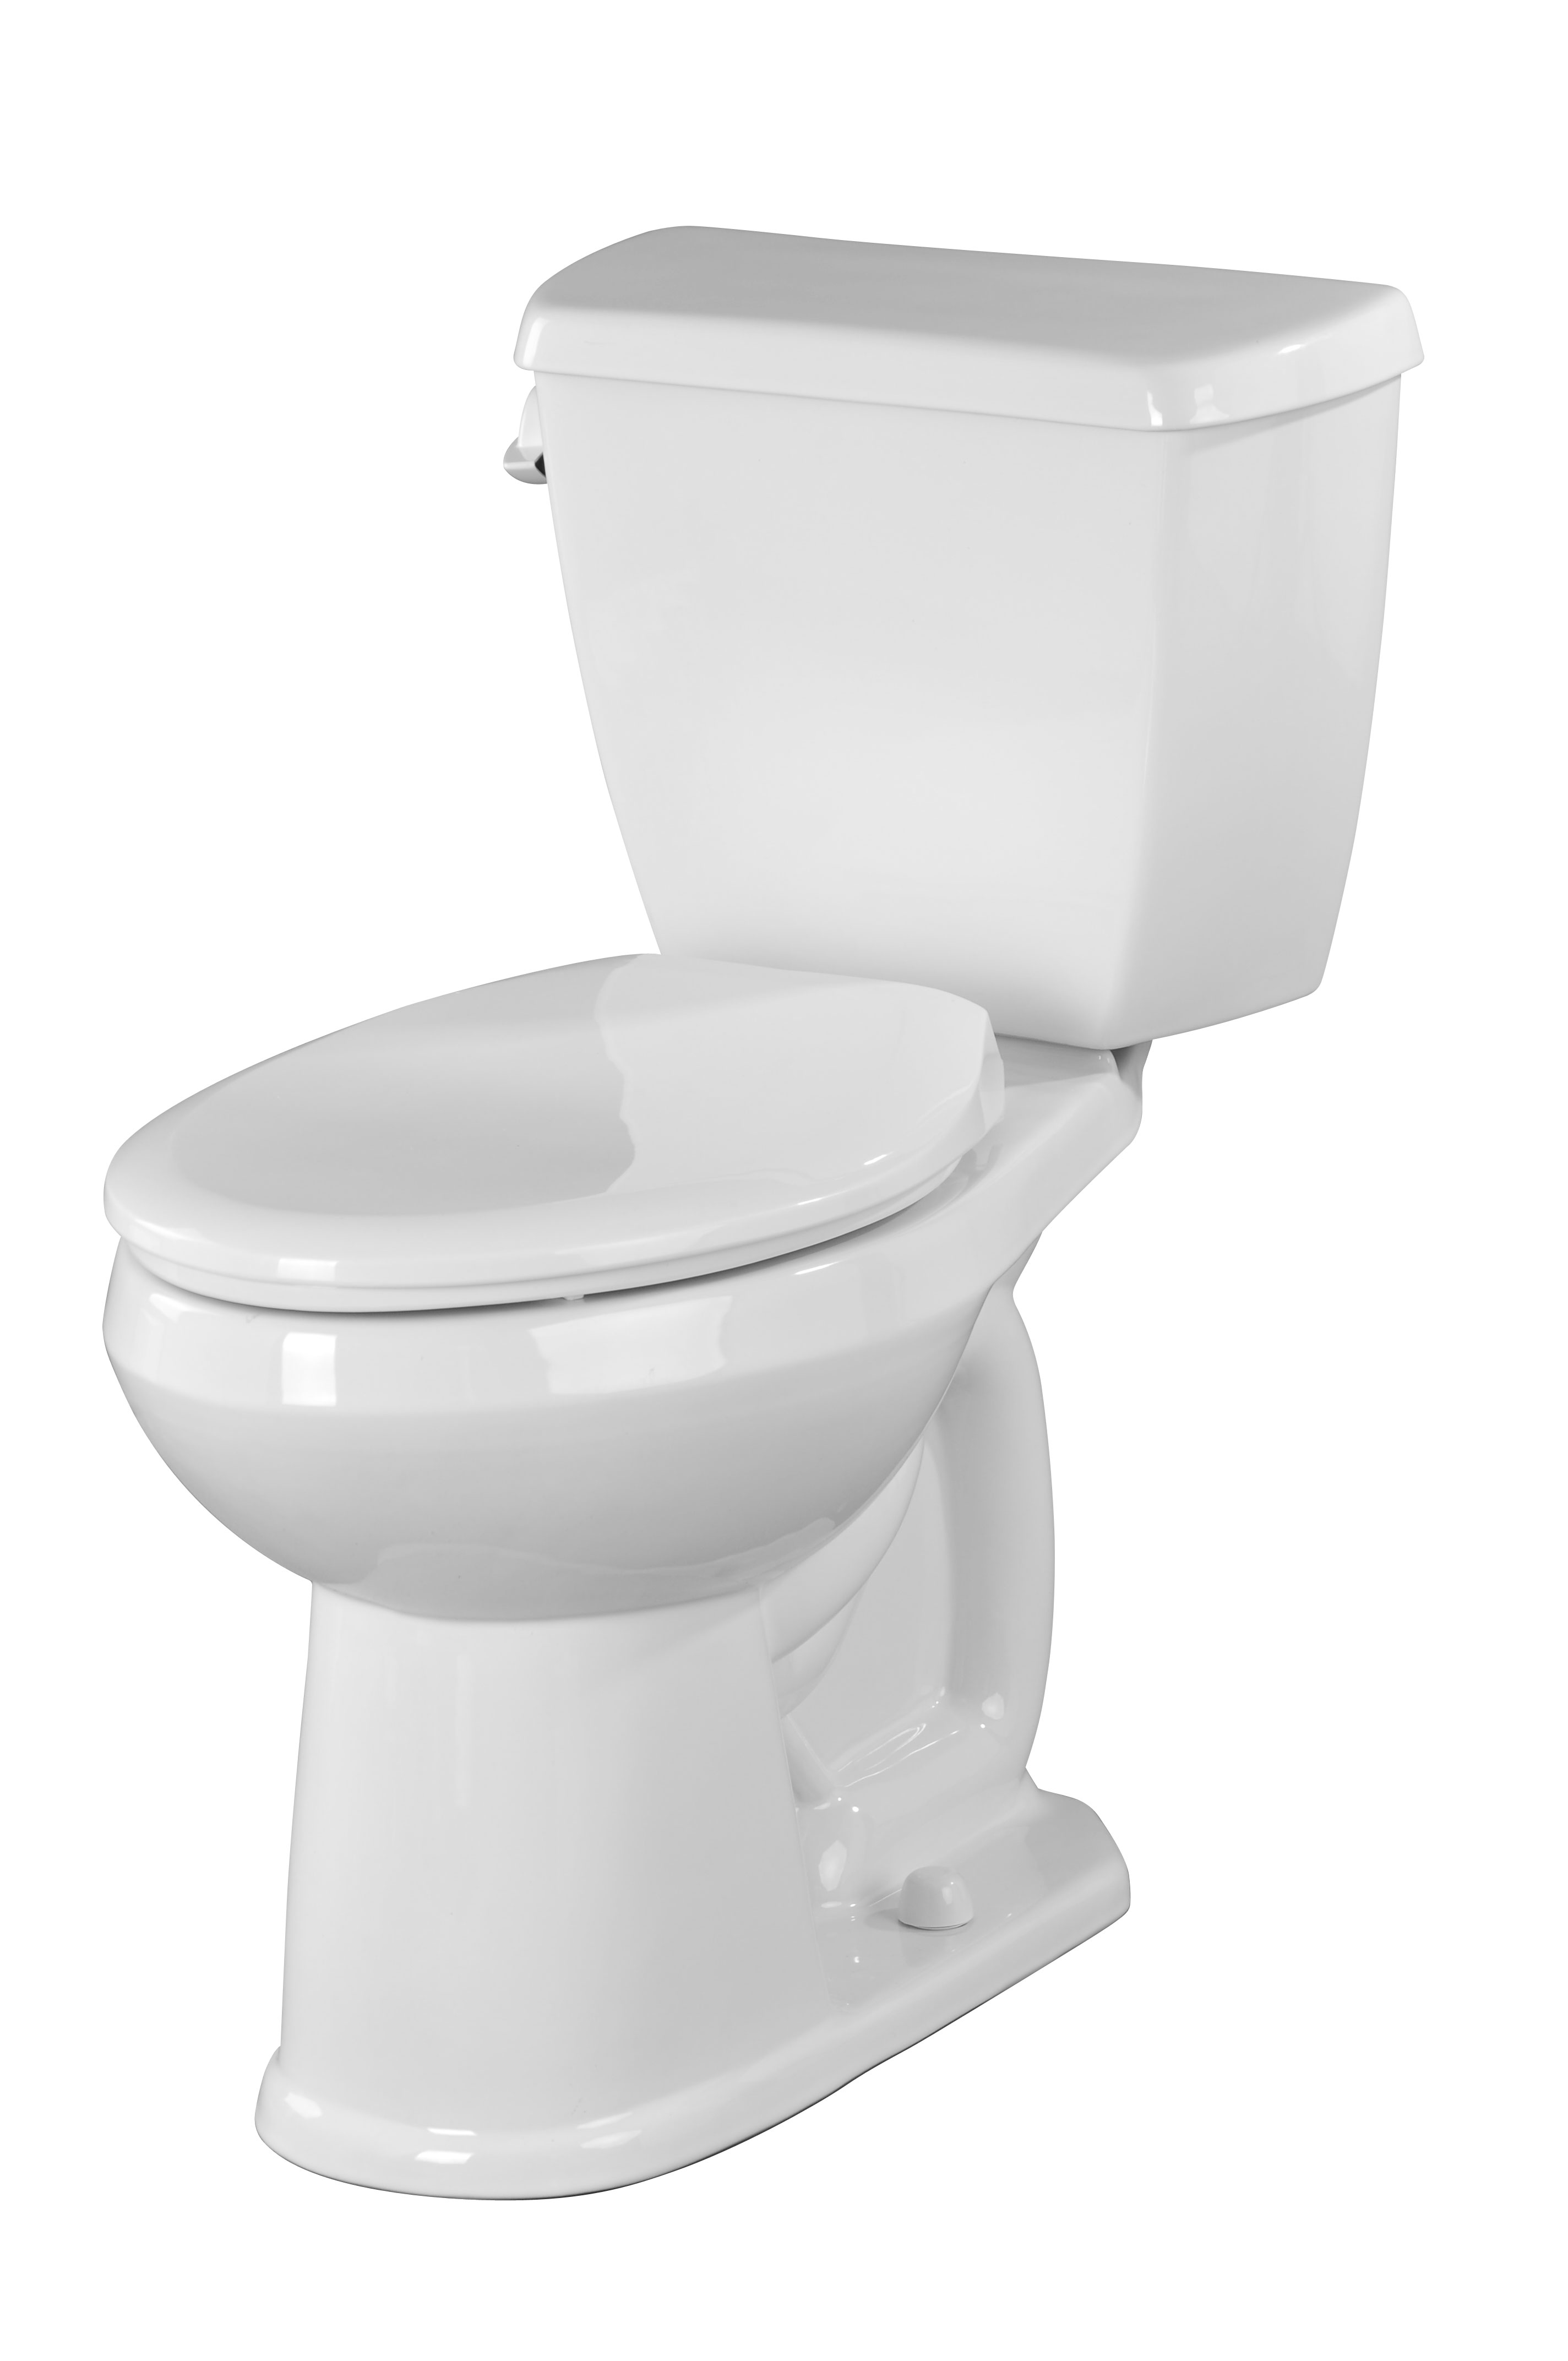 Toilets & Bidets - Bathroom Fixtures | Gerber Plumbing